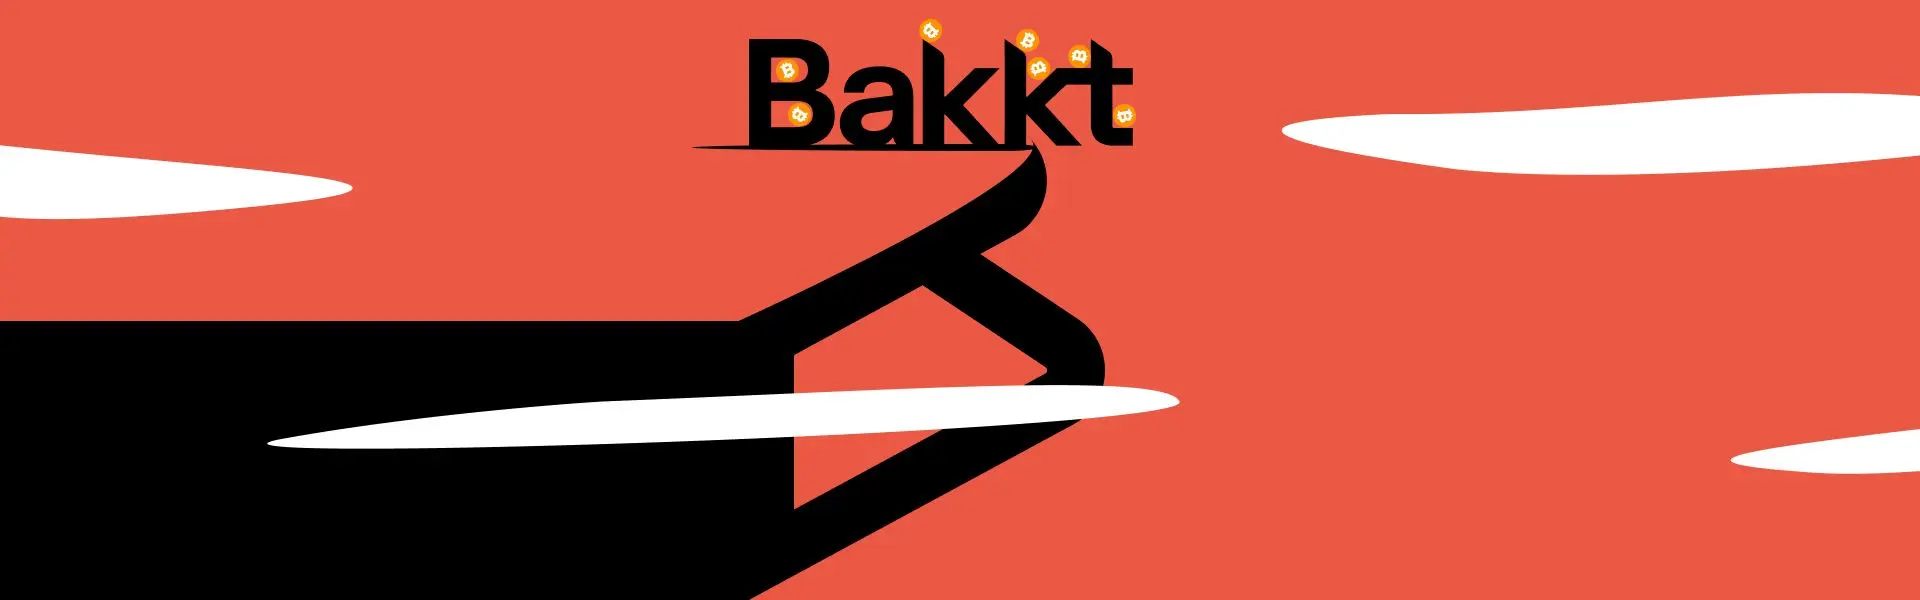 Bakkt знаходиться на межі фінансової нестабільності.